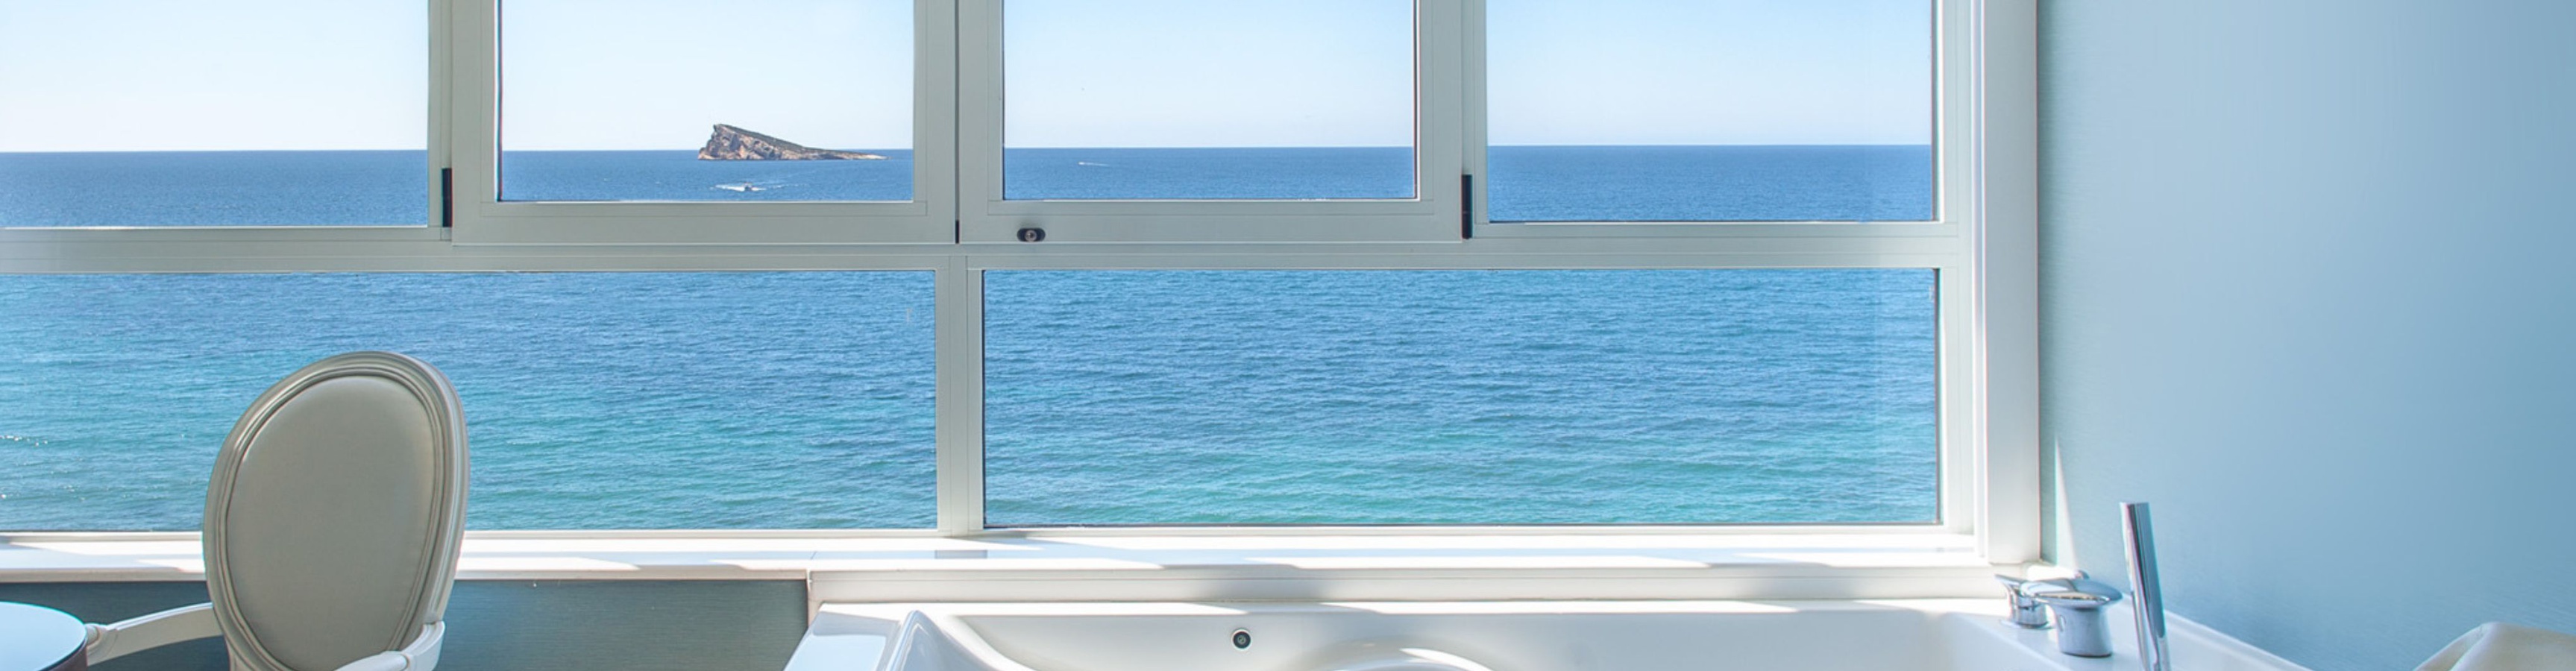 ¡Novedad! Elige tu habitación favorita Villa del Mar Benidorm